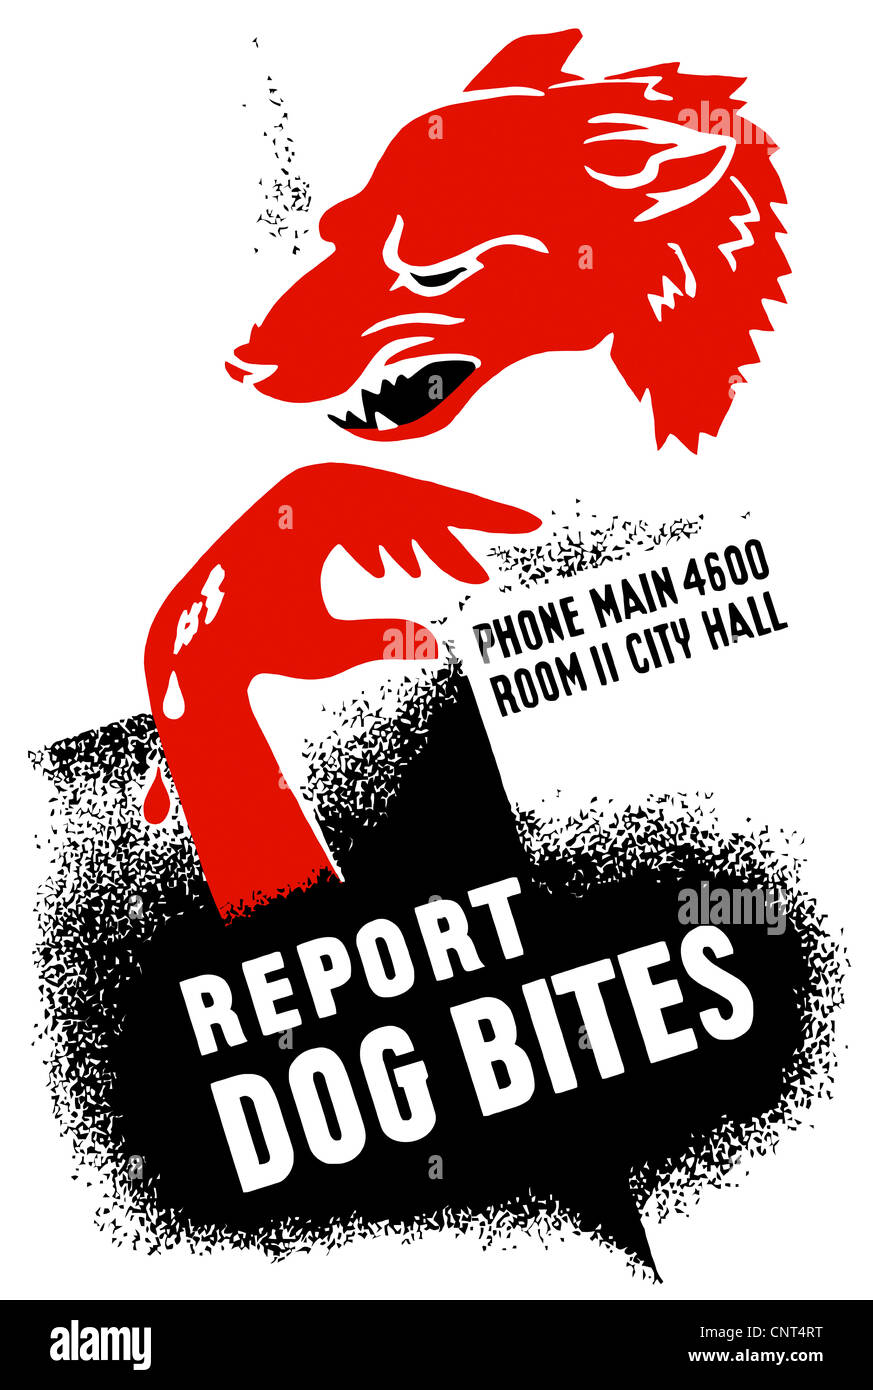 Vintage WPA Plakat ein knurrender Hund und eine blutende Hand. Es liest, Bericht Hund beißt, Telefon Main 4600 Zimmer II City Hall. Stockfoto